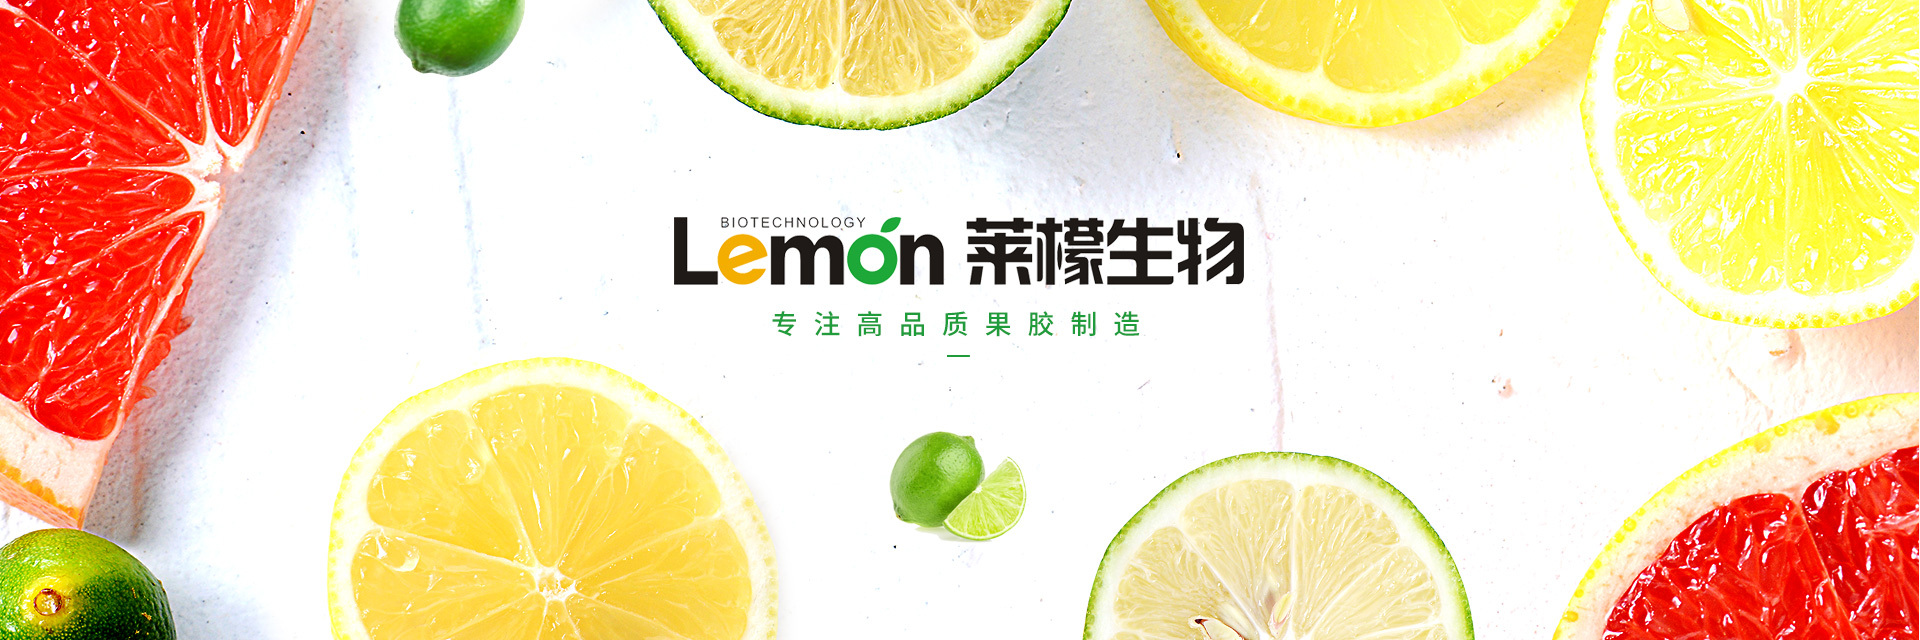 广州市莱檬生物科技有限公司